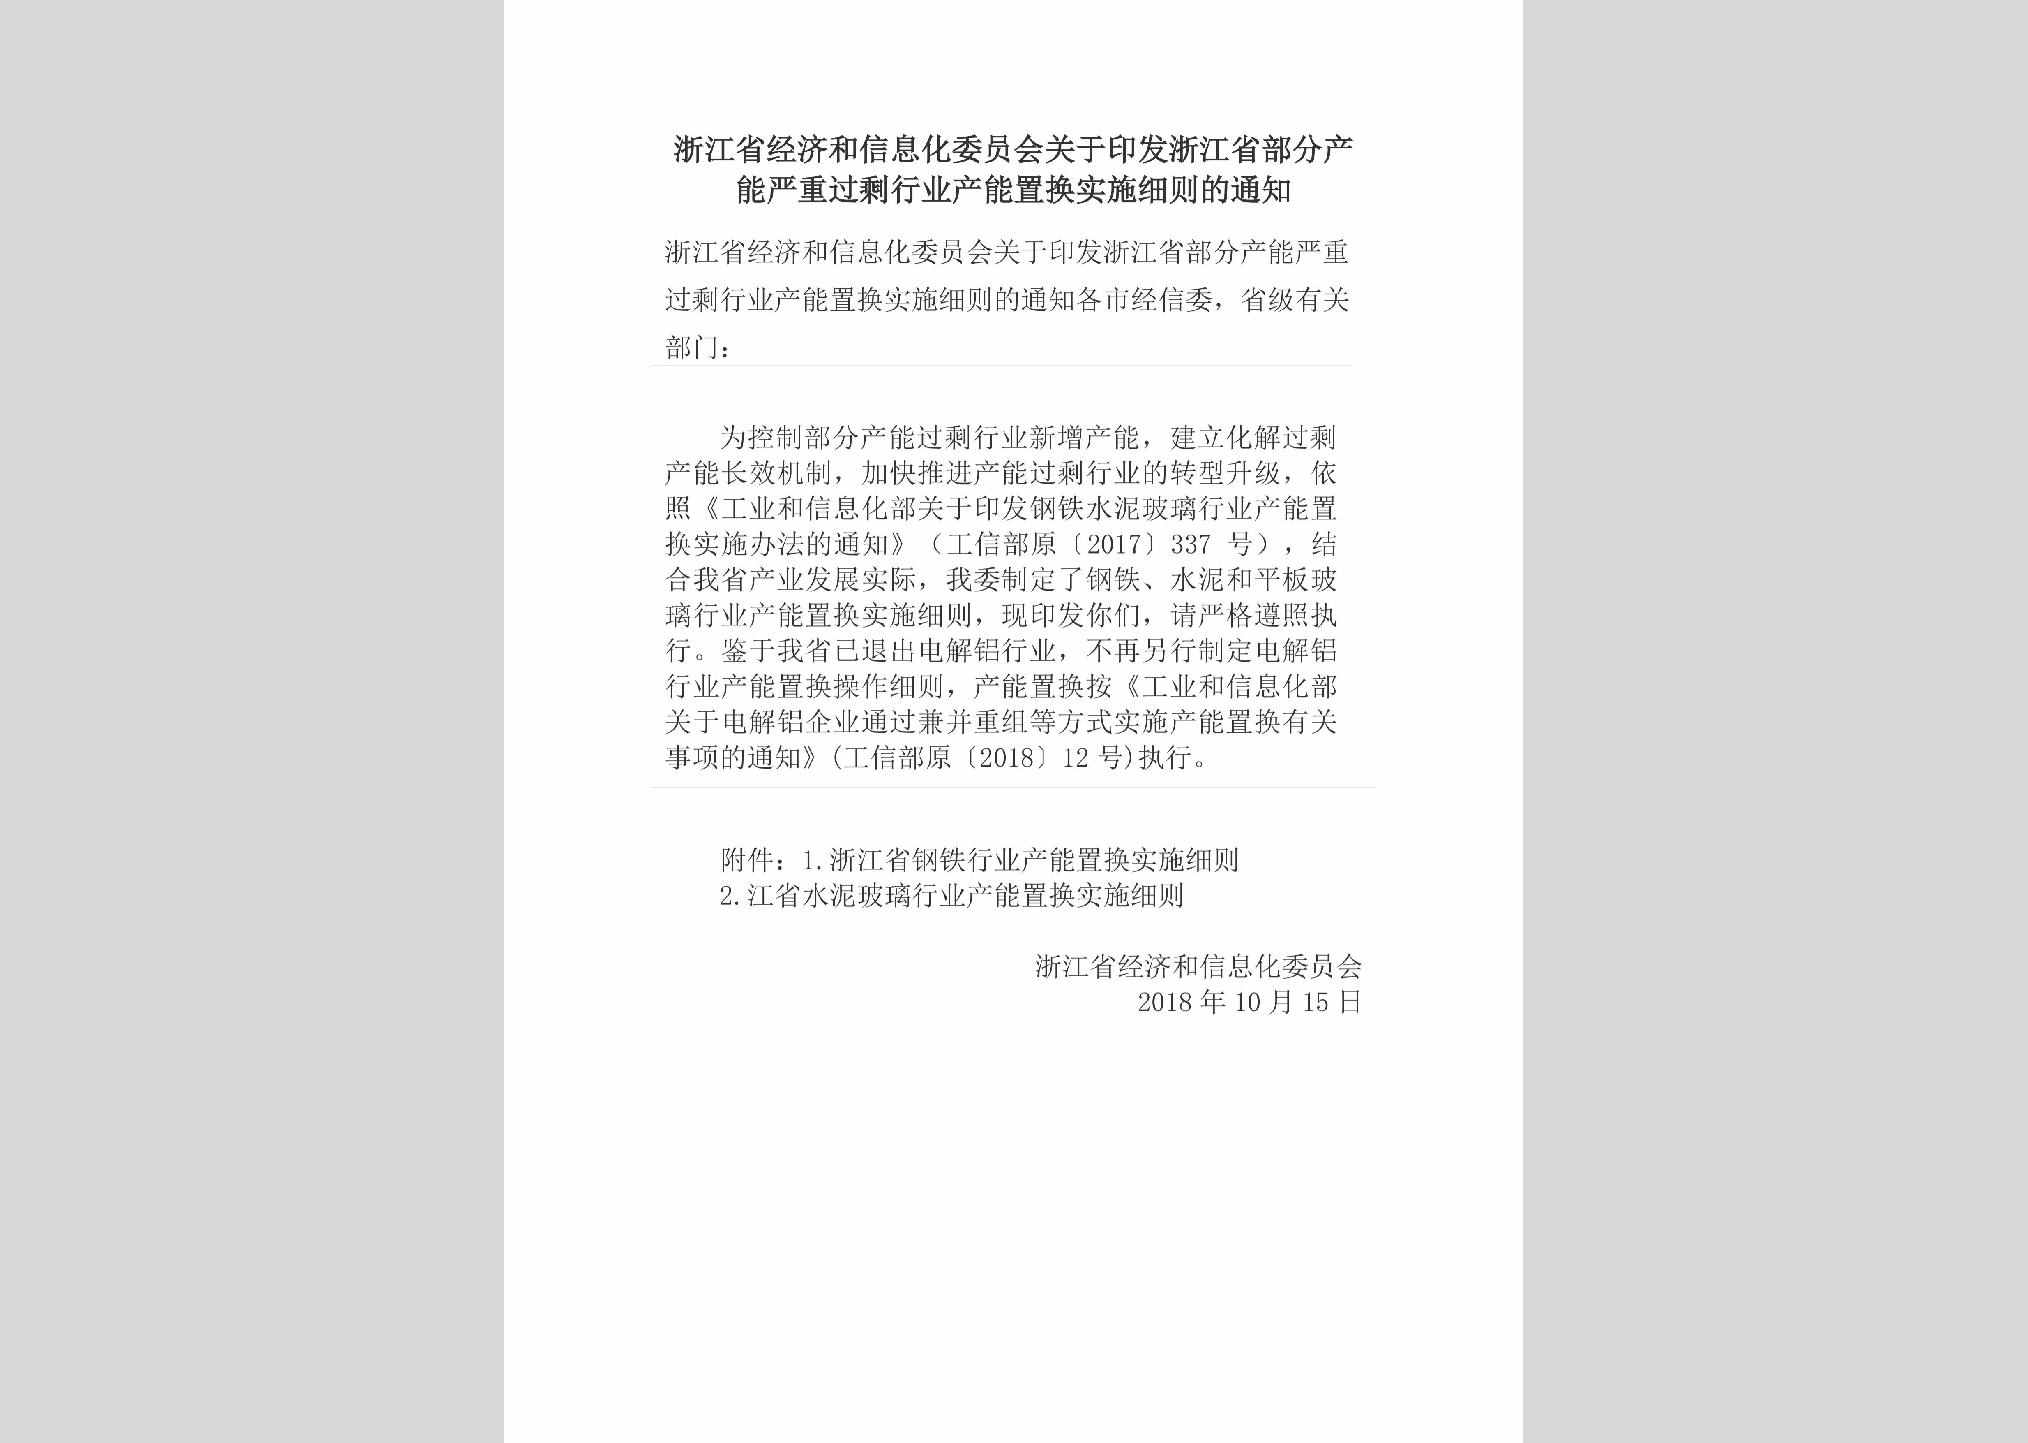 ZJ-HSSXCDTZ-2018：浙江省经济和信息化委员会关于印发浙江省部分产能严重过剩行业产能置换实施细则的通知